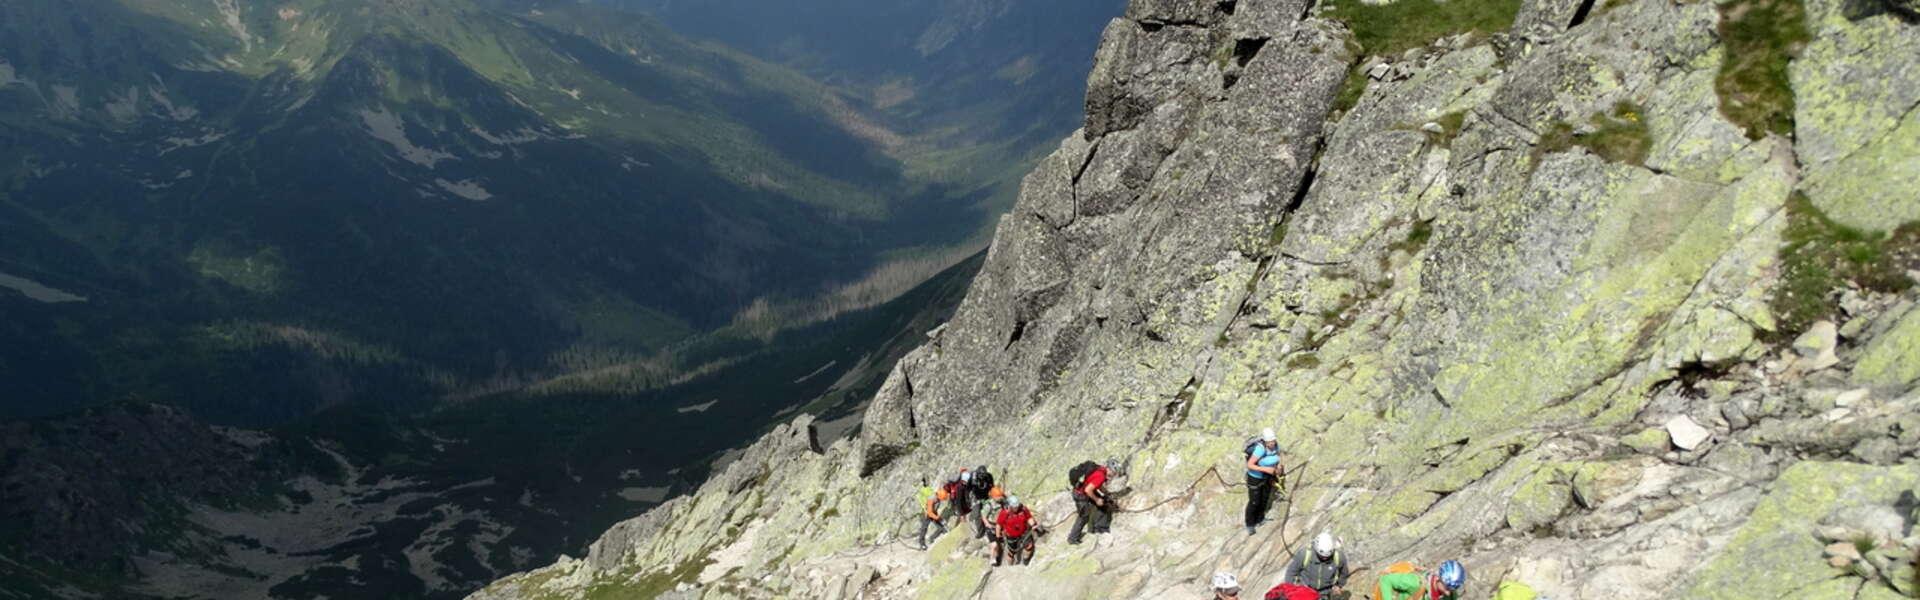 widok na grupę osób wspinających się po ścianie skalnej w drodze na szczyt Świnica w Tatrach